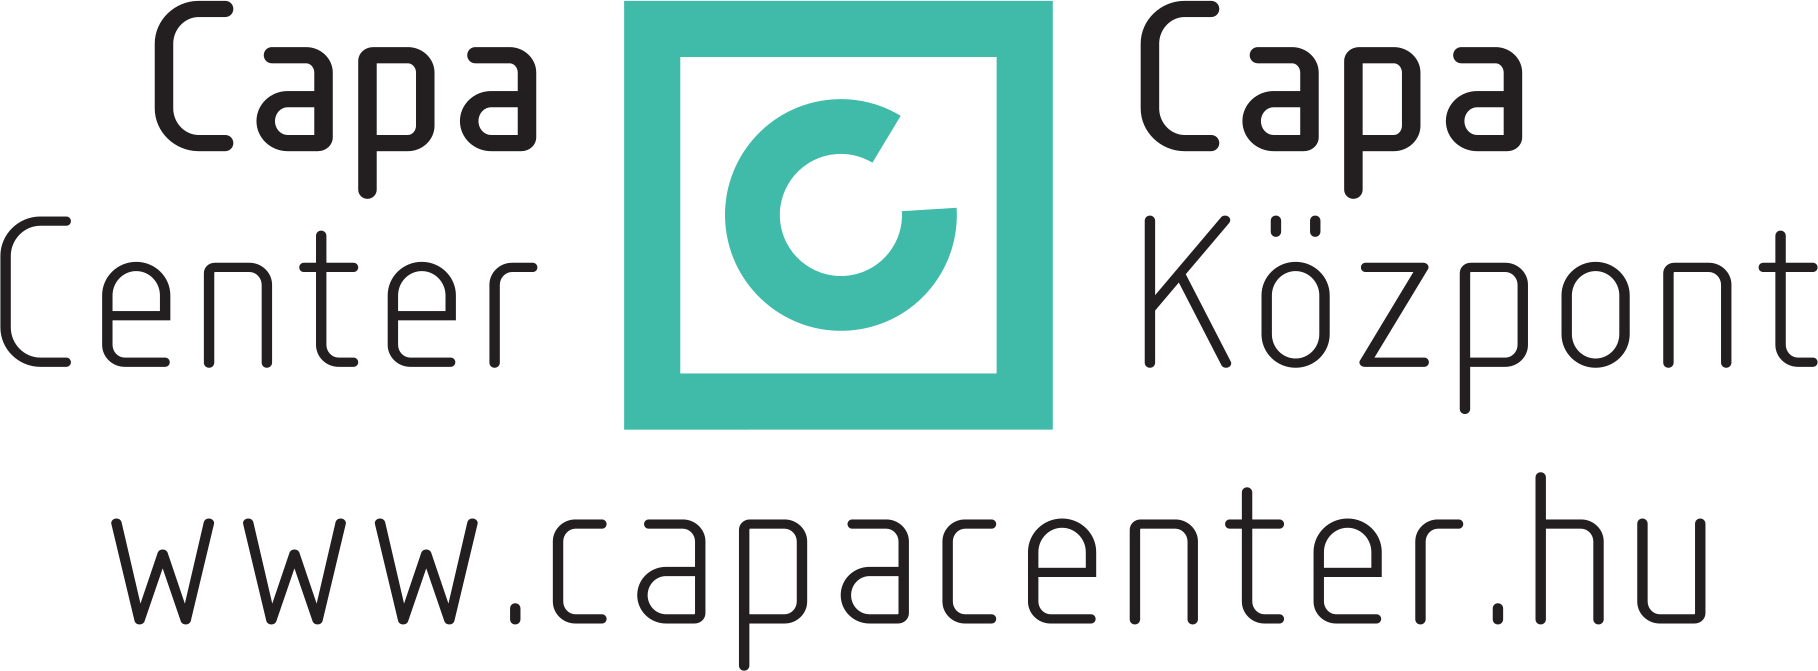 Robert Capa Contemporary Photography Center